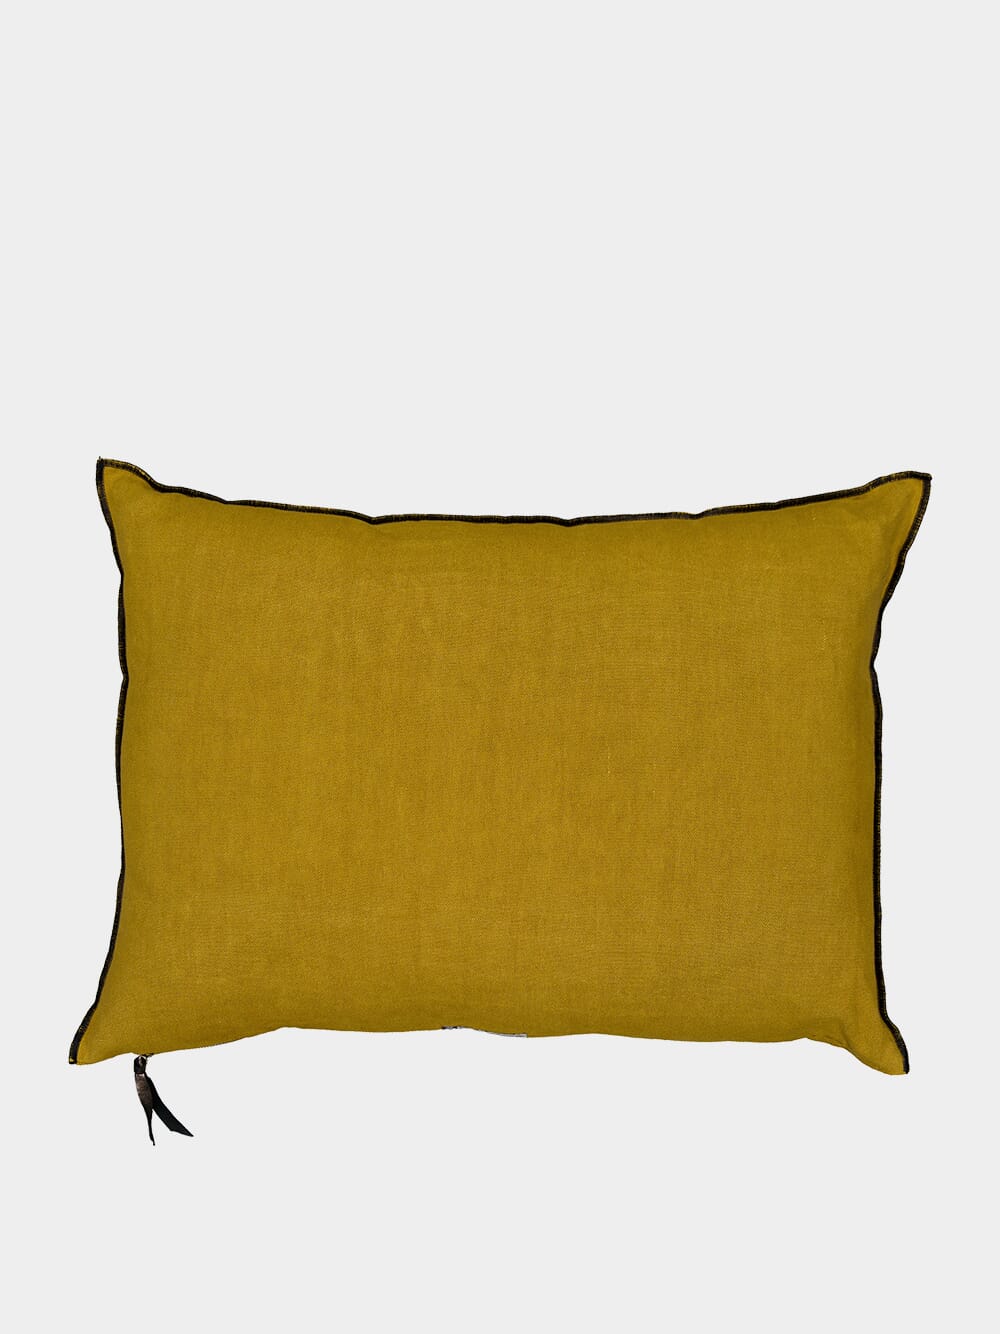 Vice Versa Washed Linen Mustard Cushion